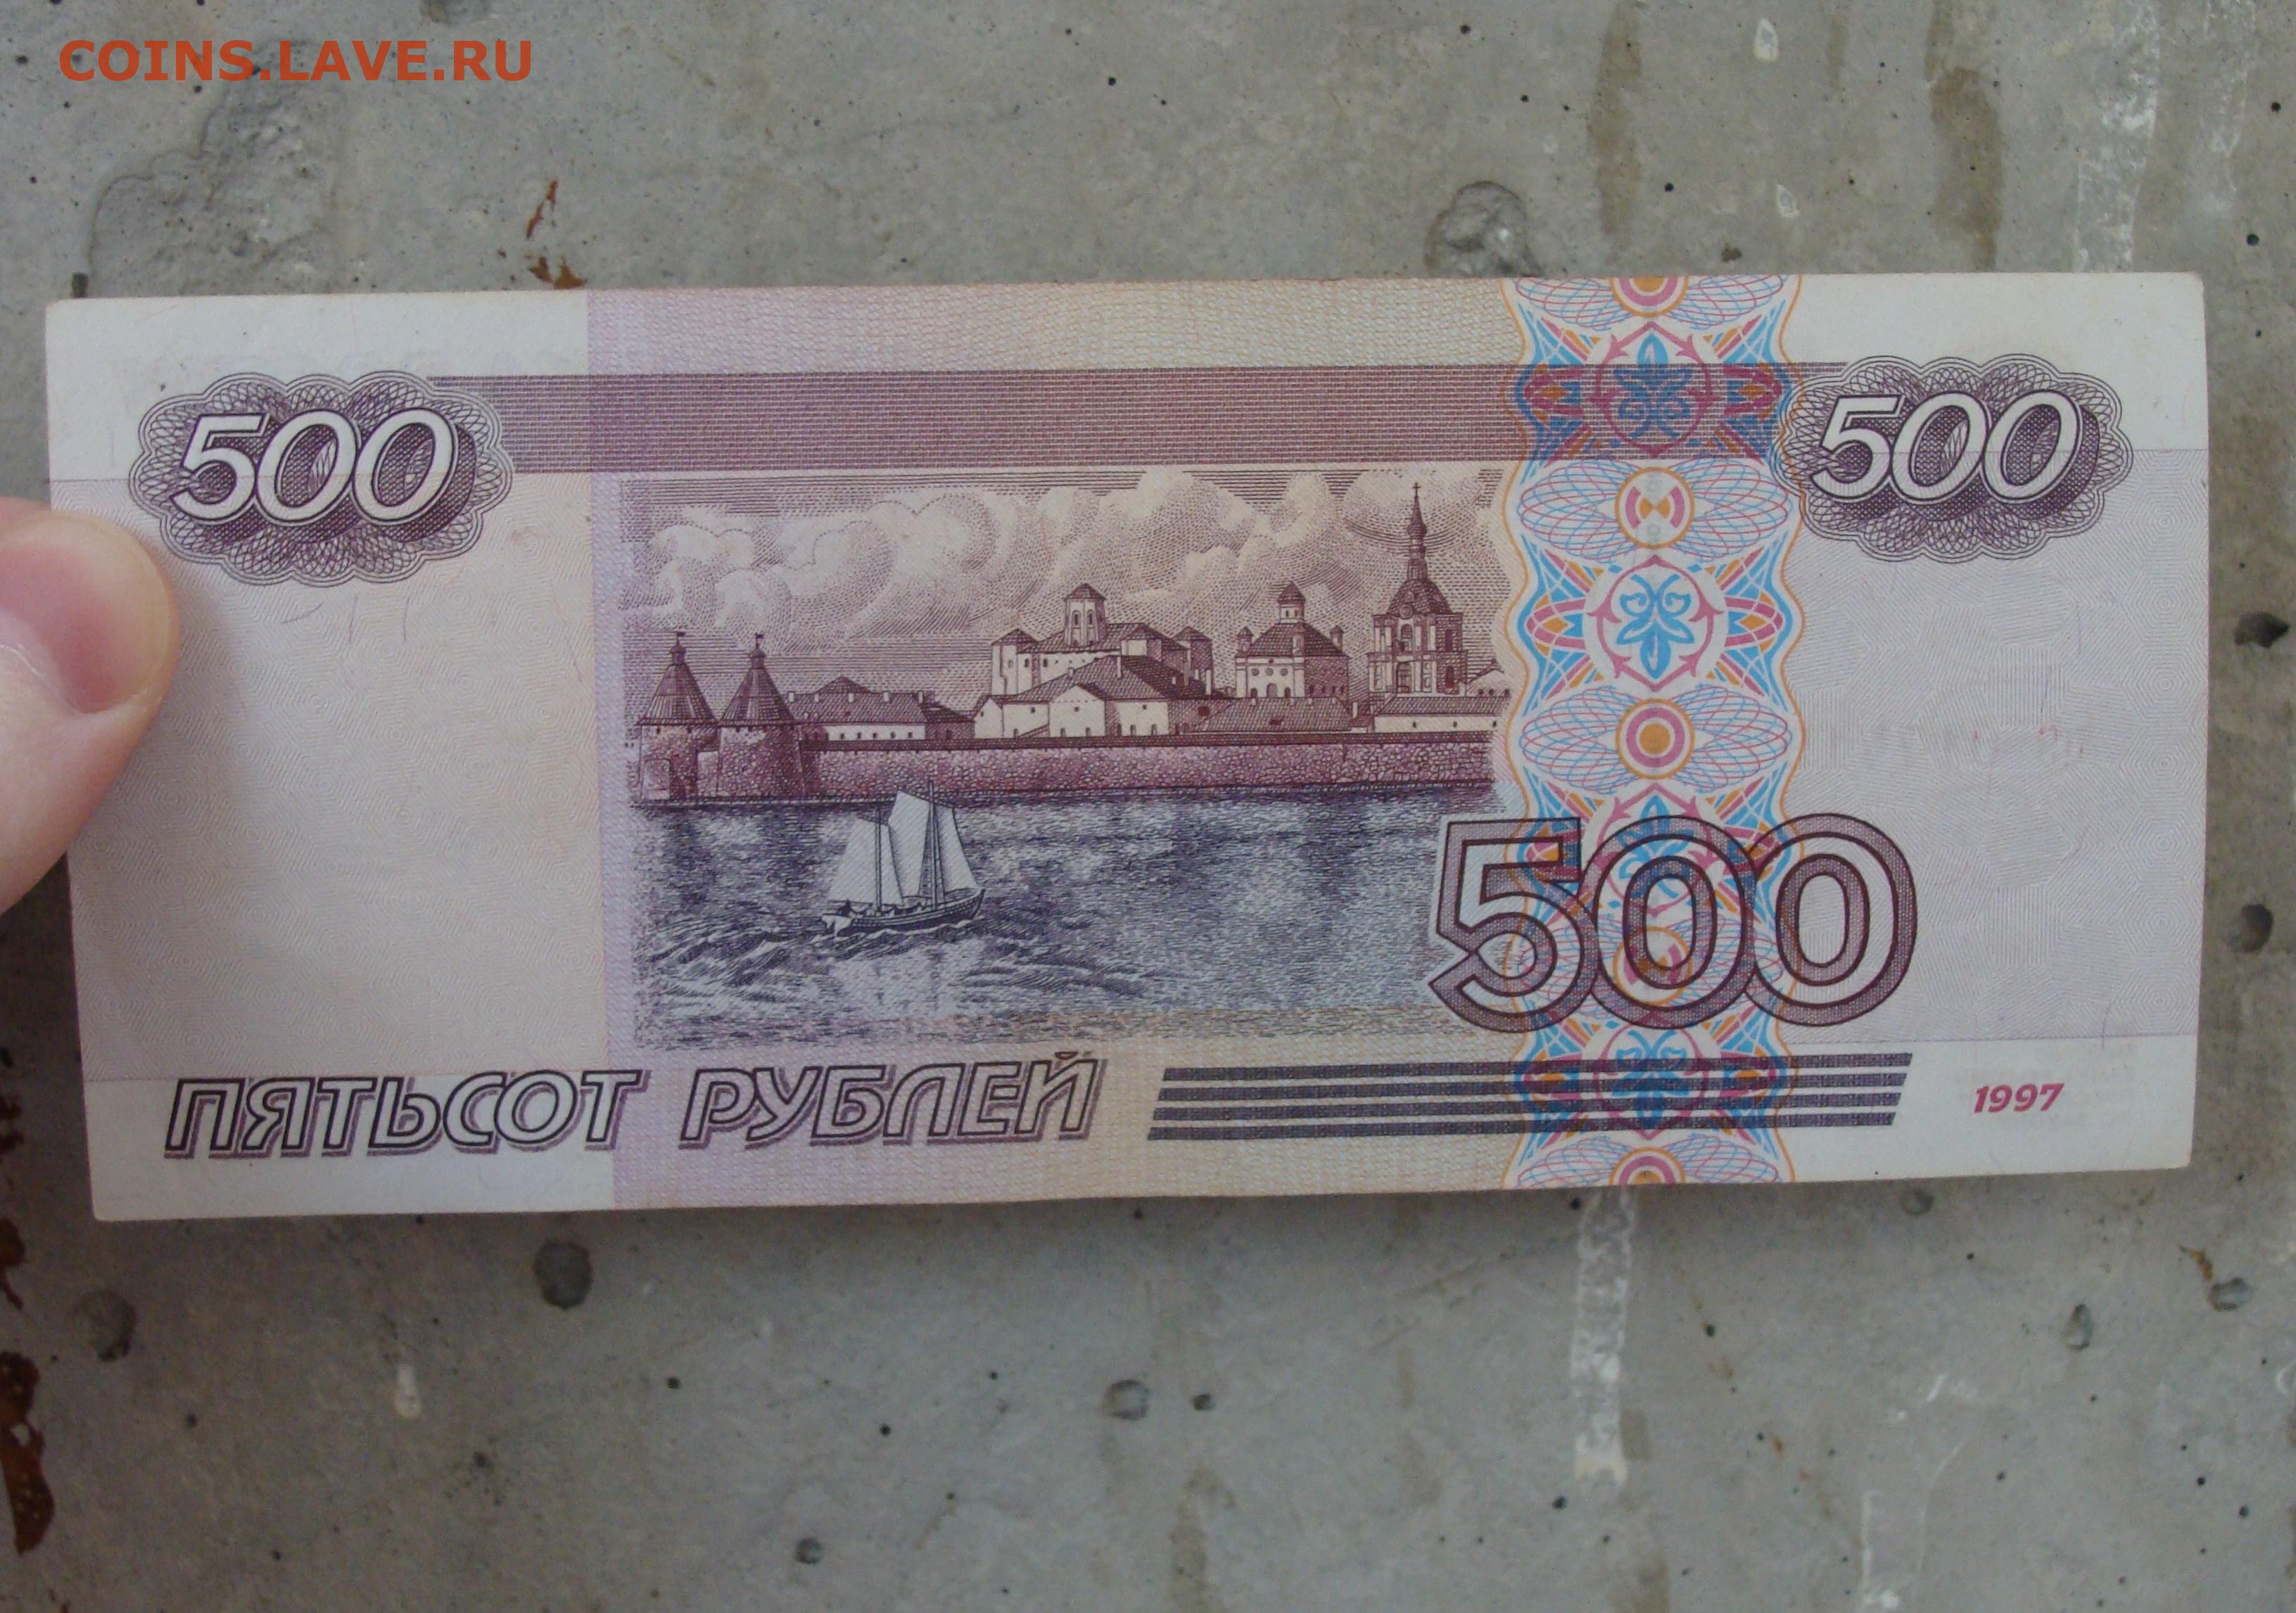 2500 рублей россии. 500 Рублей России. 500 Рублей 2001 года модификации. 500 Р модификация 2001. 500 Российских рублей.